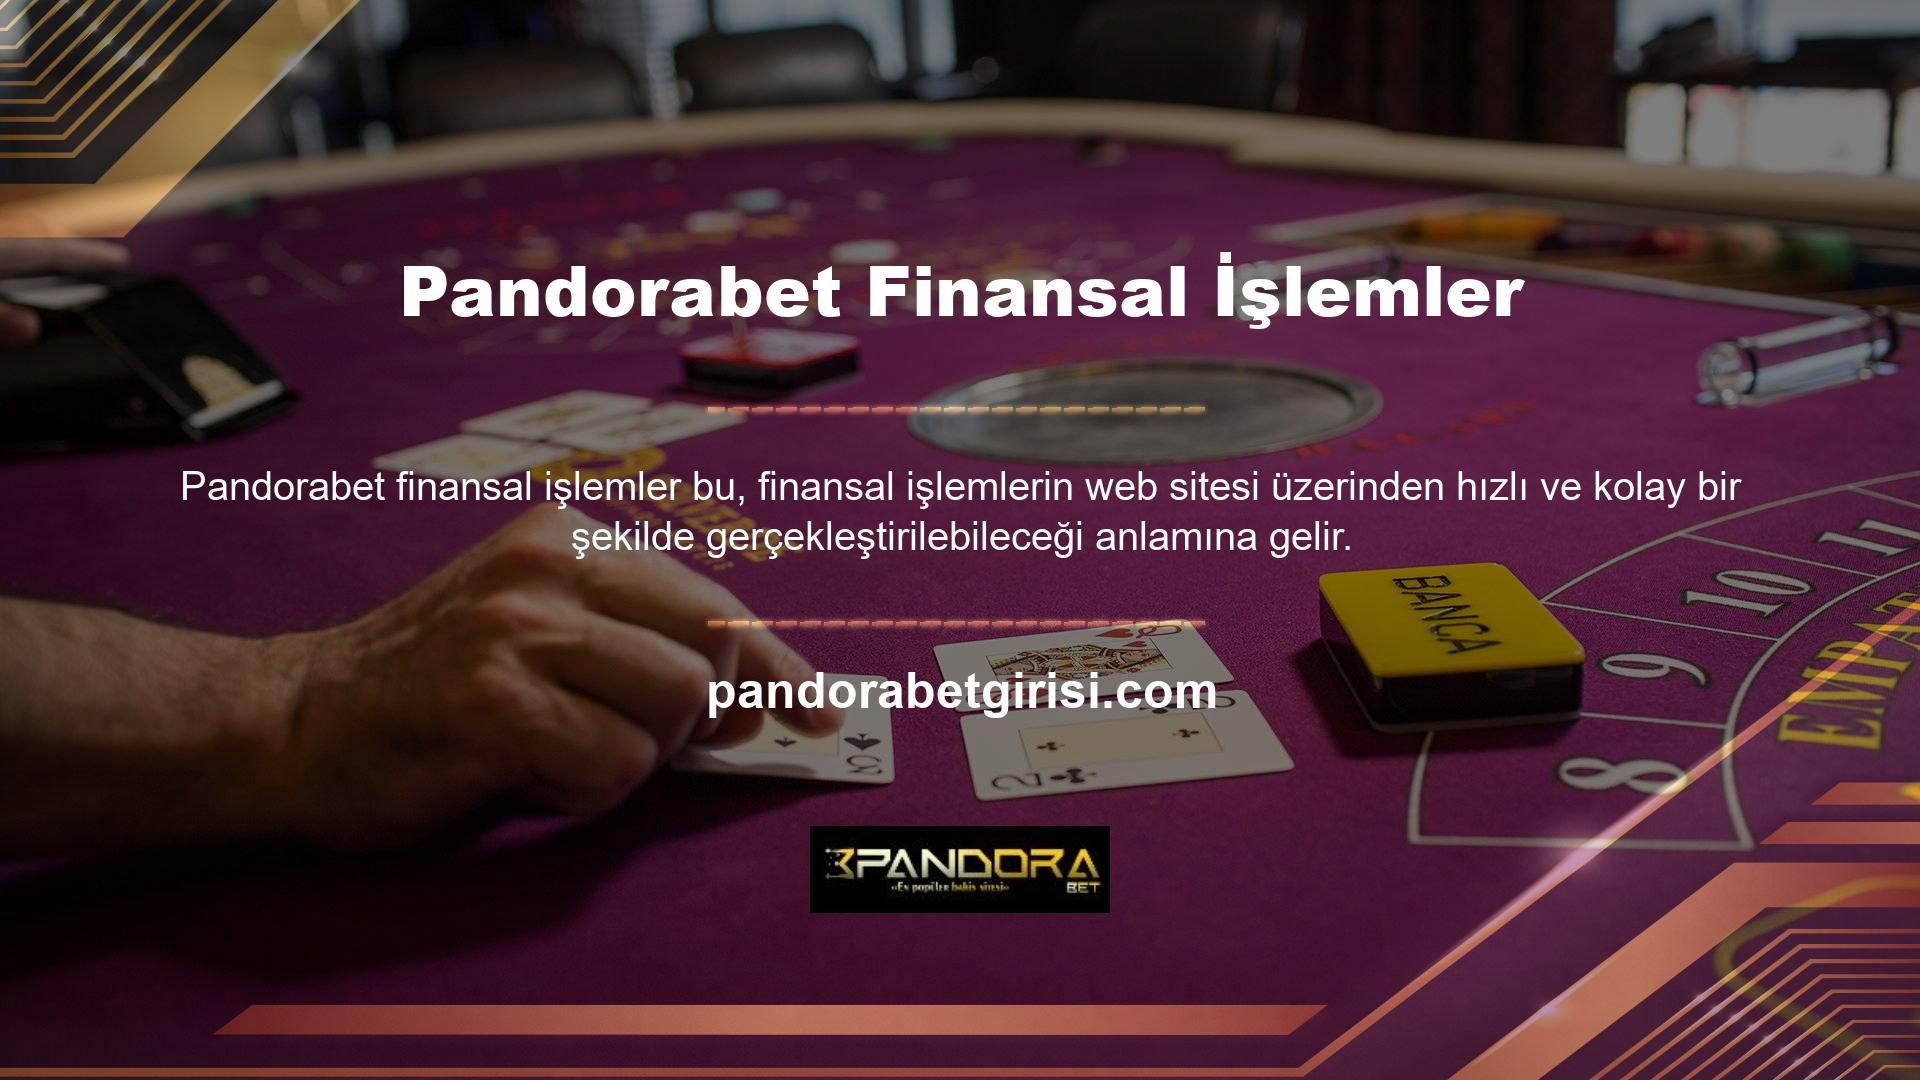 Hızlı ve güvenilir ödeme seçenekleri sunan Pandorabet siz de üye olabilirsiniz